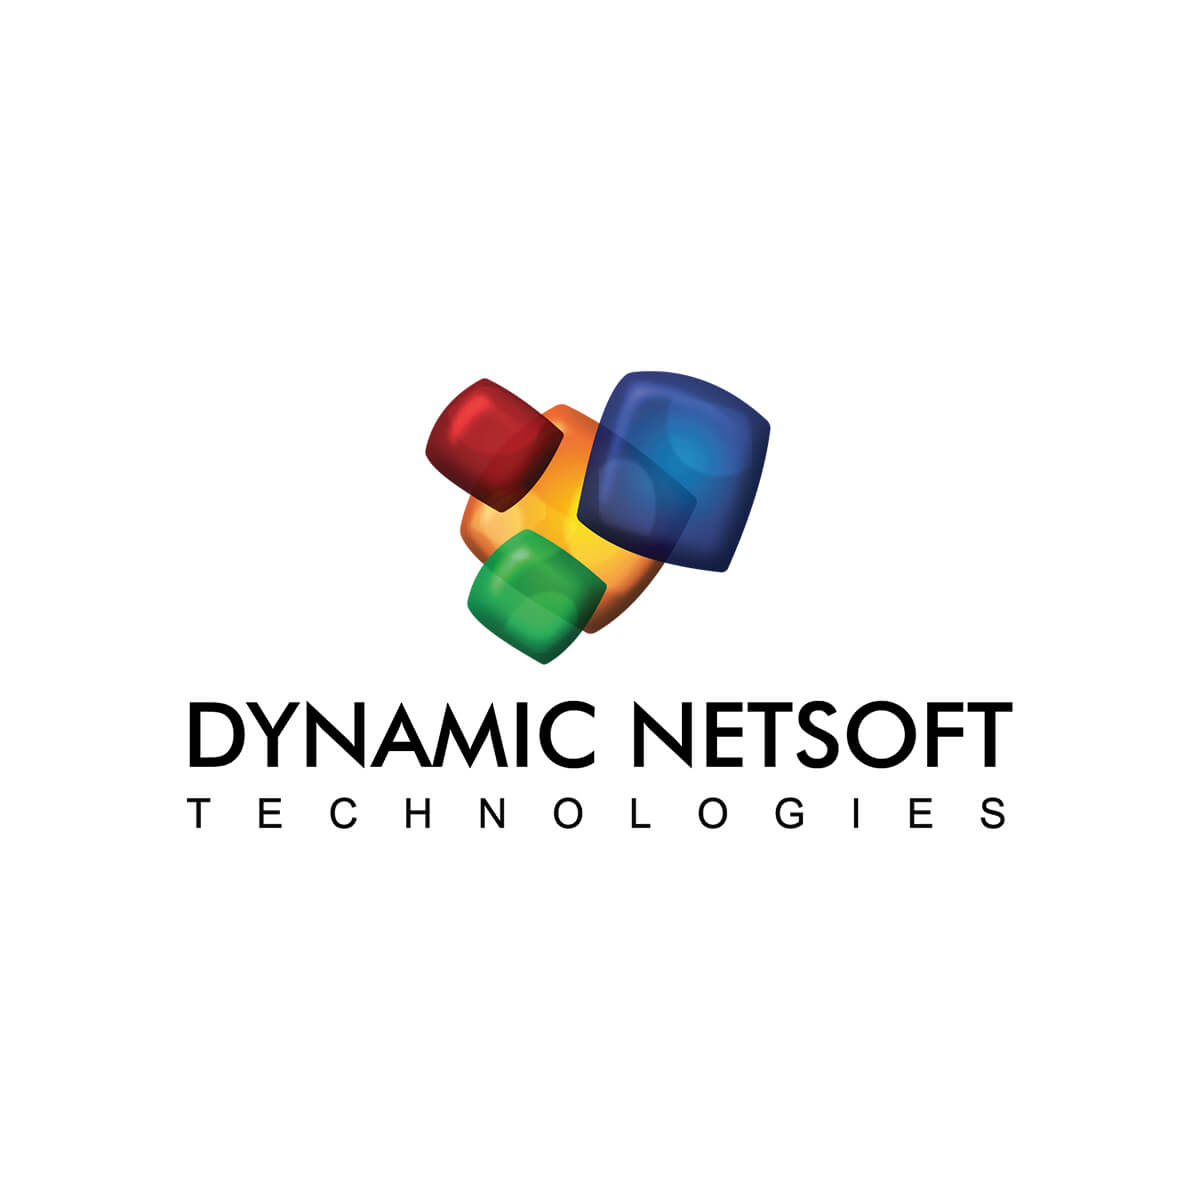 Dynamic Netsoft Technologies